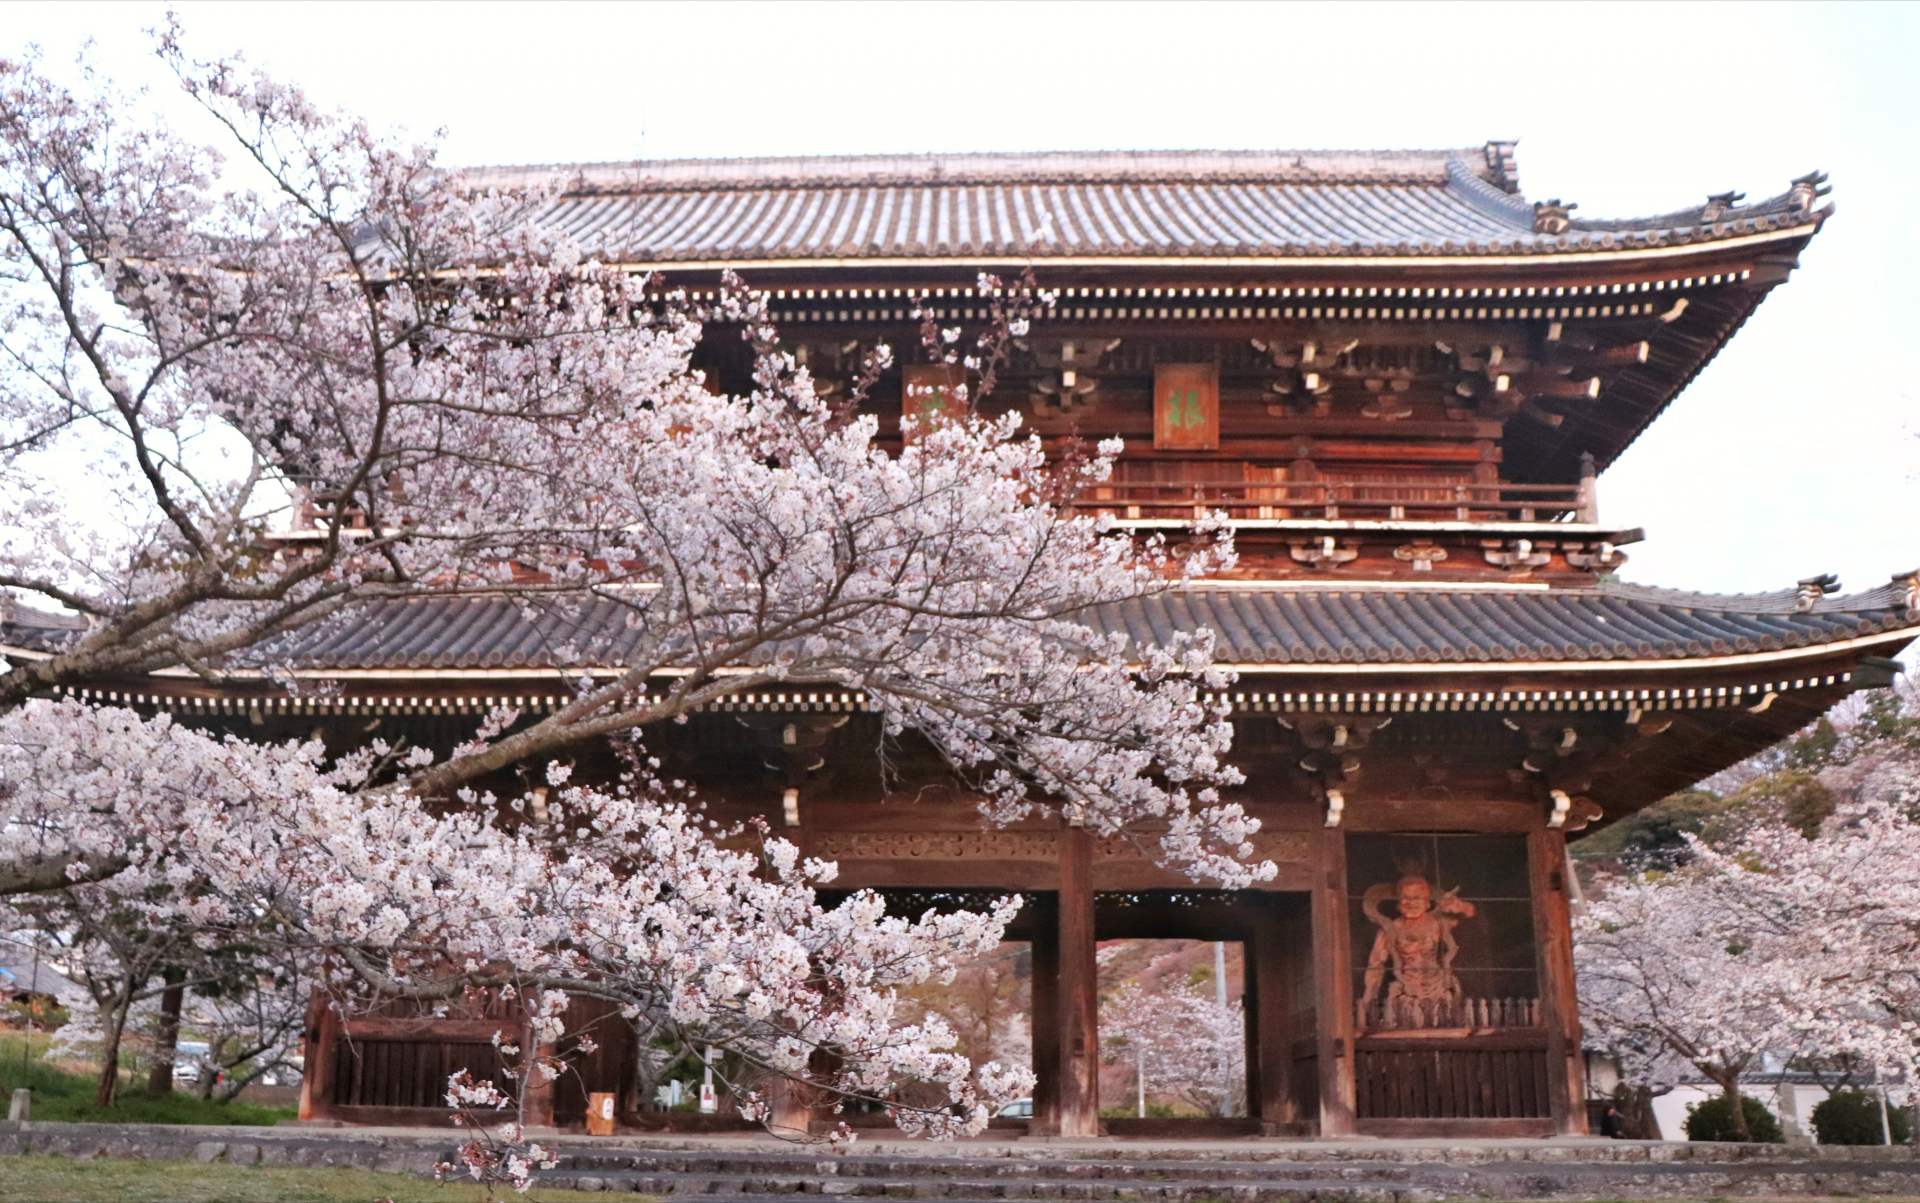 春には境内約7000本の桜が咲き誇り、胸を打つ光景が広がる